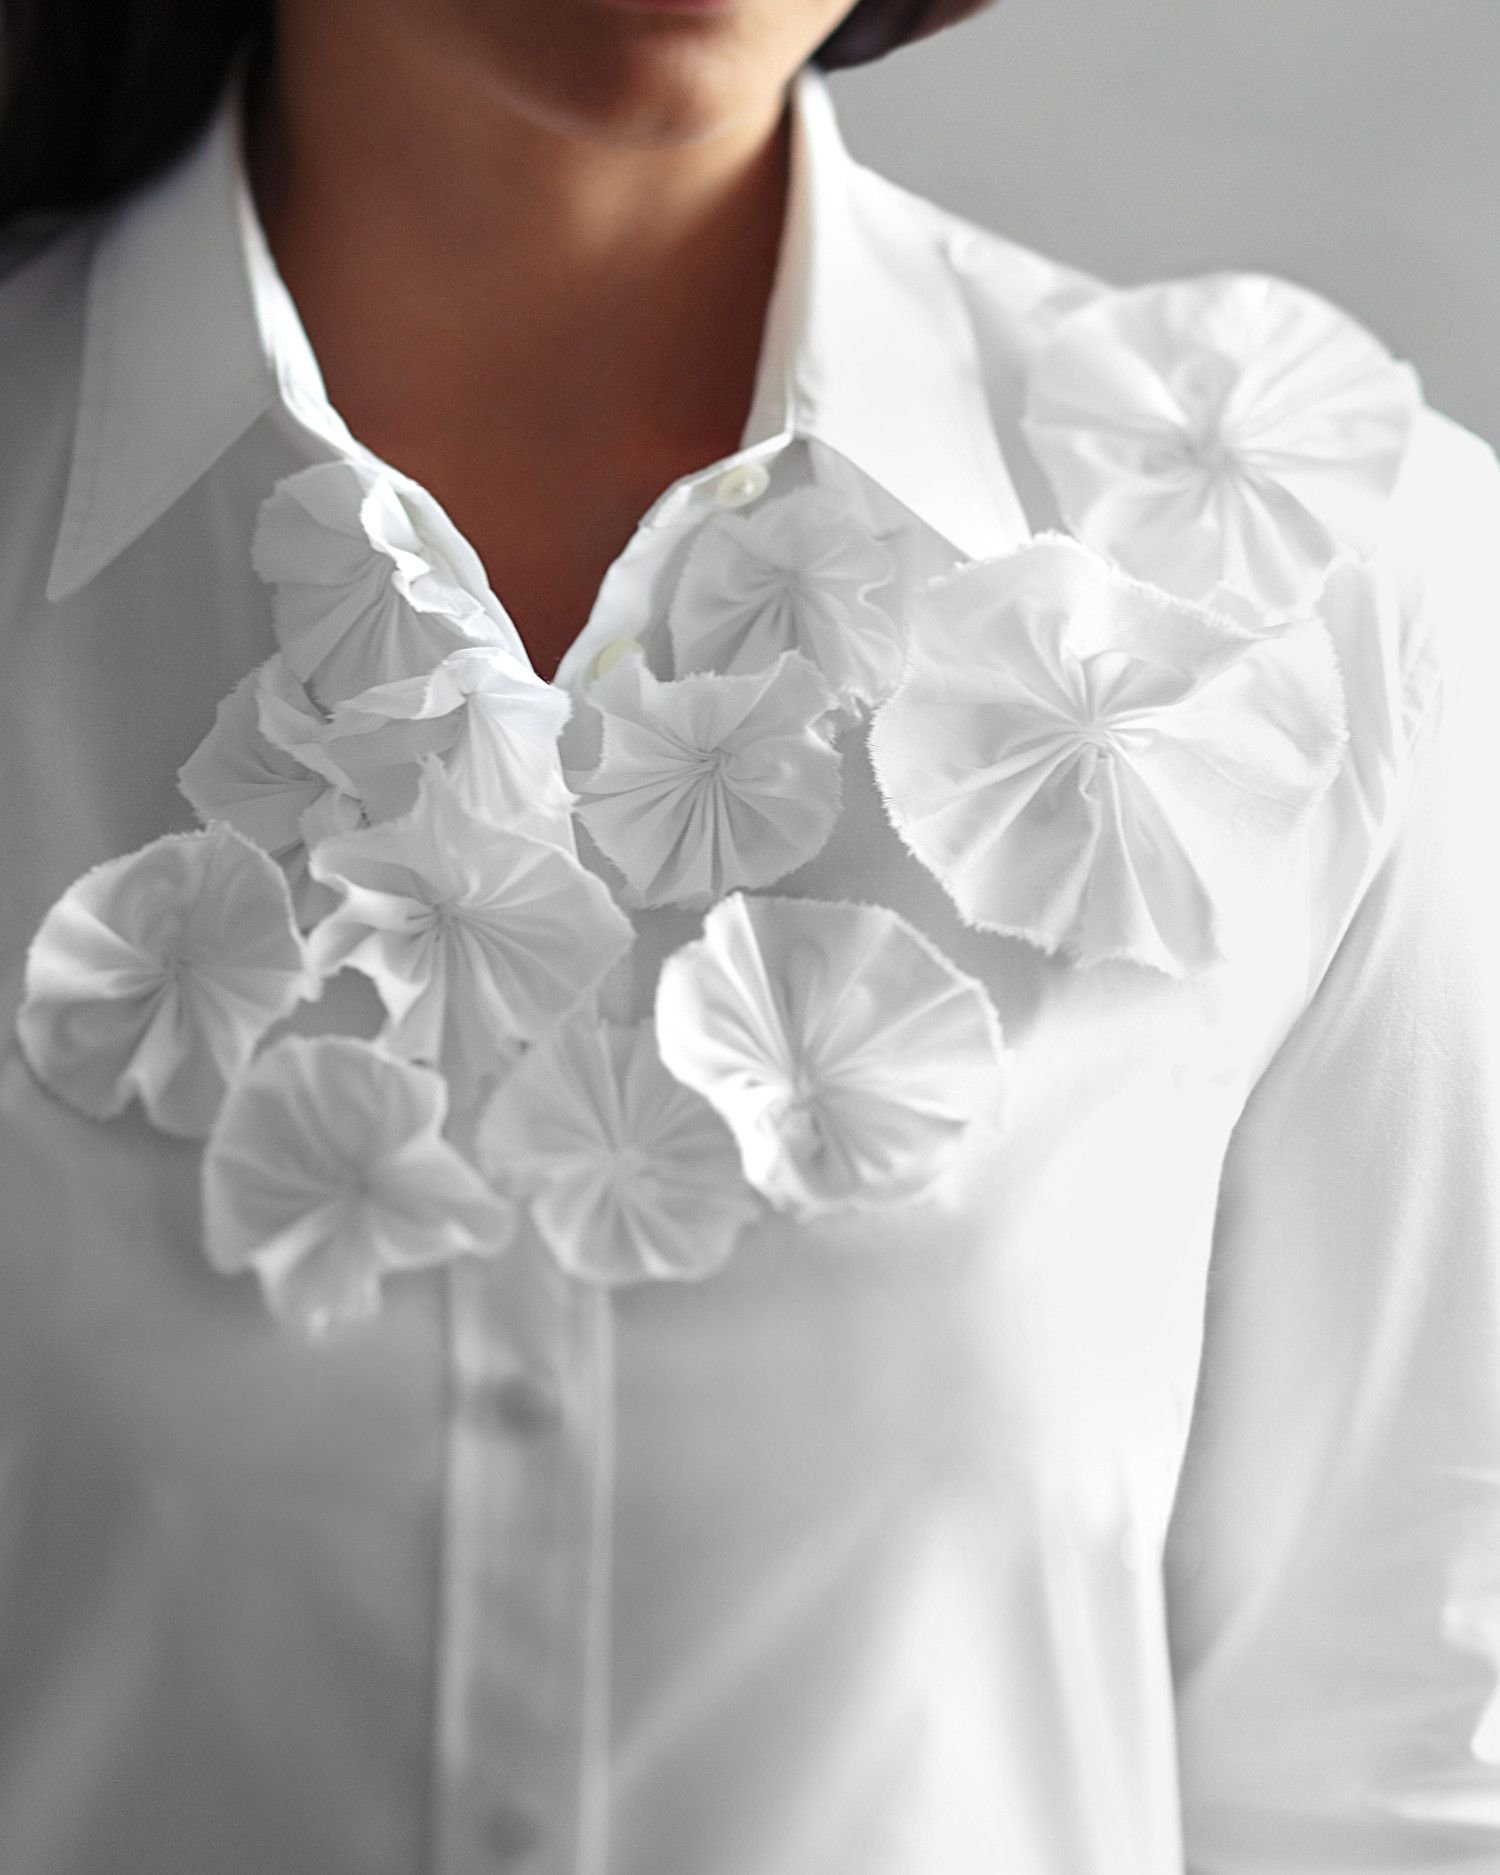 Украшения к белой блузке